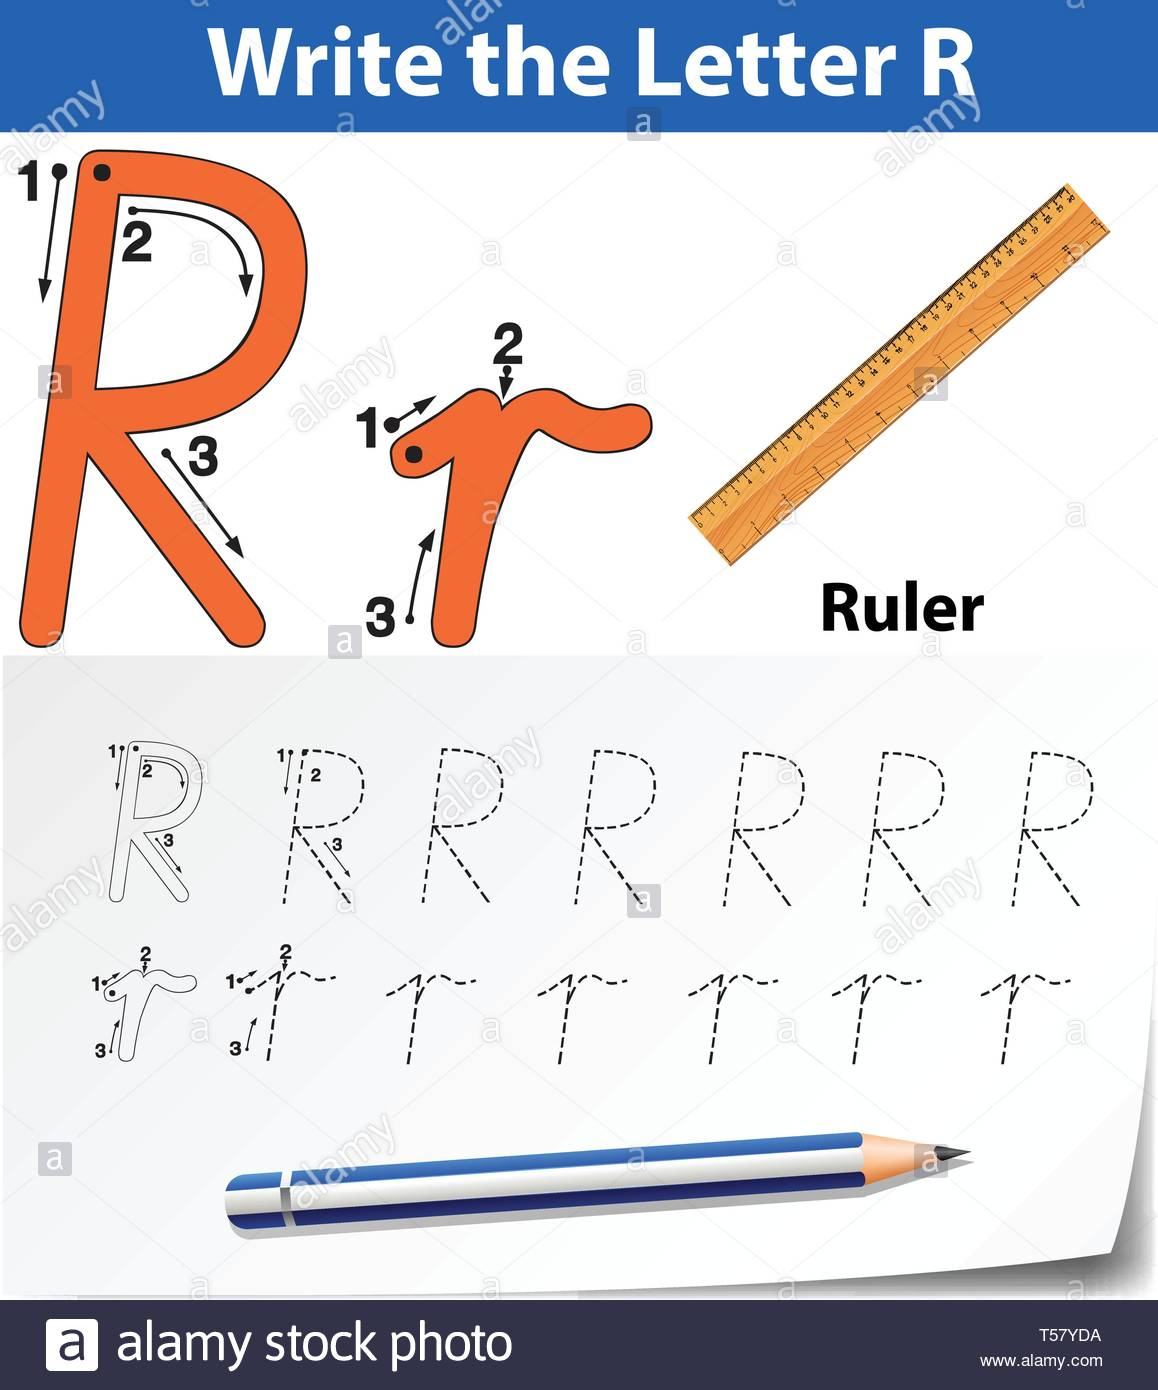 Letter R Tracing Alphabet Worksheets Illustration Stock regarding Letter Tracing Ruler